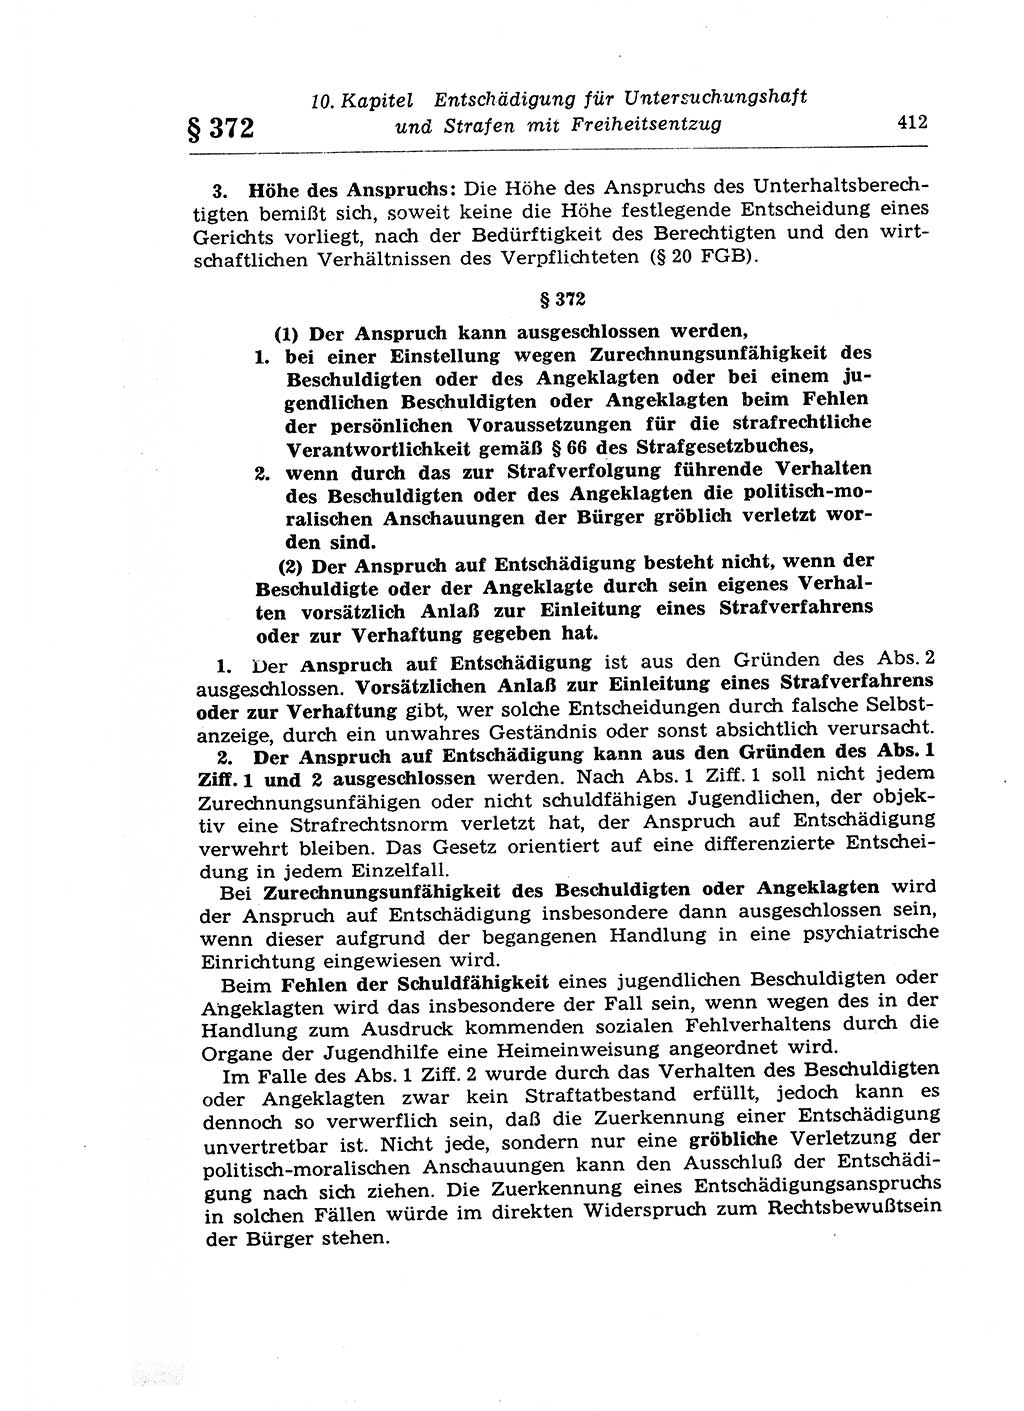 Strafprozeßrecht der DDR (Deutsche Demokratische Republik), Lehrkommentar zur Strafprozeßordnung (StPO) 1968, Seite 412 (Strafprozeßr. DDR Lehrkomm. StPO 19688, S. 412)